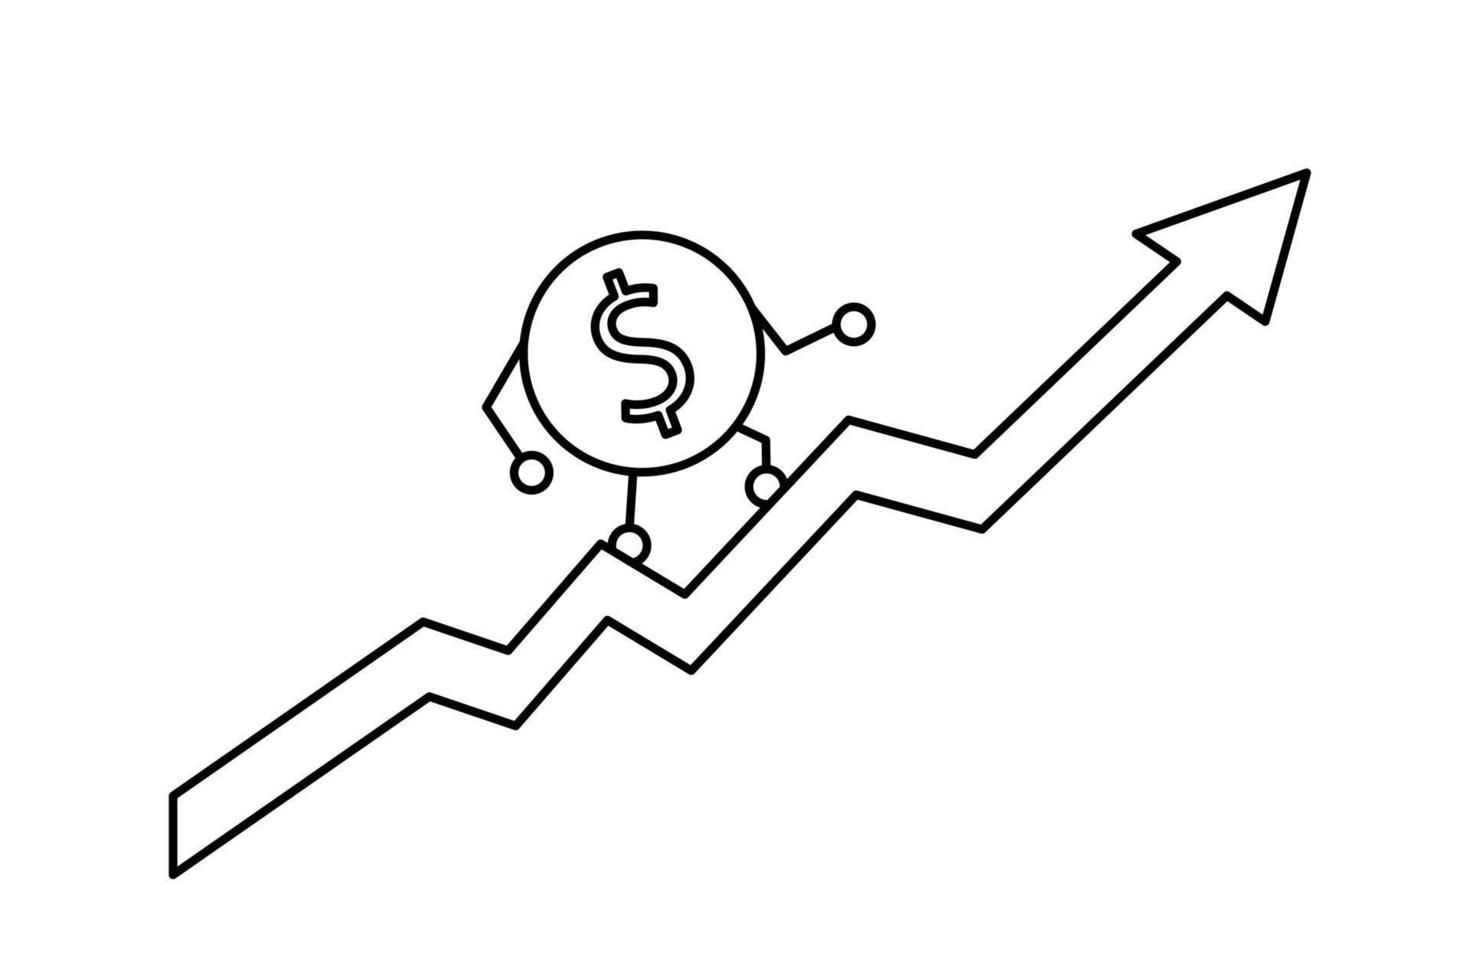 la moneda del dólar sube por la flecha roja. el concepto de un negocio exitoso. ilustración del esquema vector